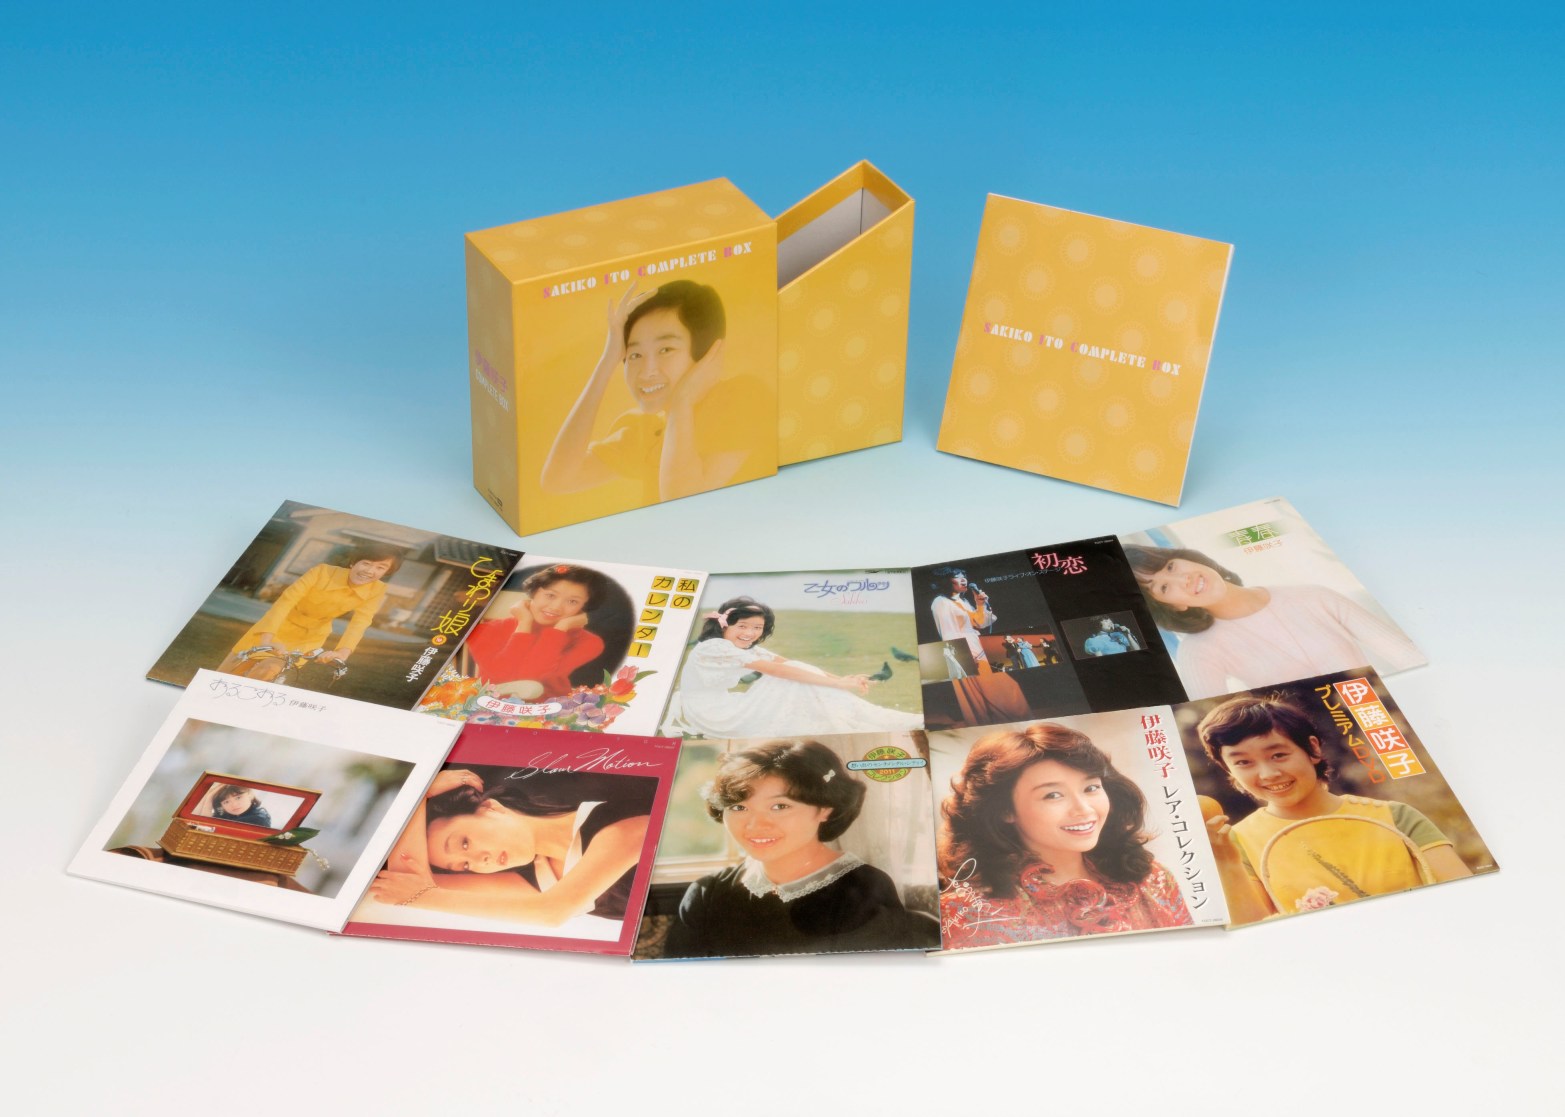 あの ひまわり娘 のお宝pvも発掘 収録 伊藤咲子8 31 Complete Box 発売 ユニバーサル ミュージック合同会社のプレスリリース